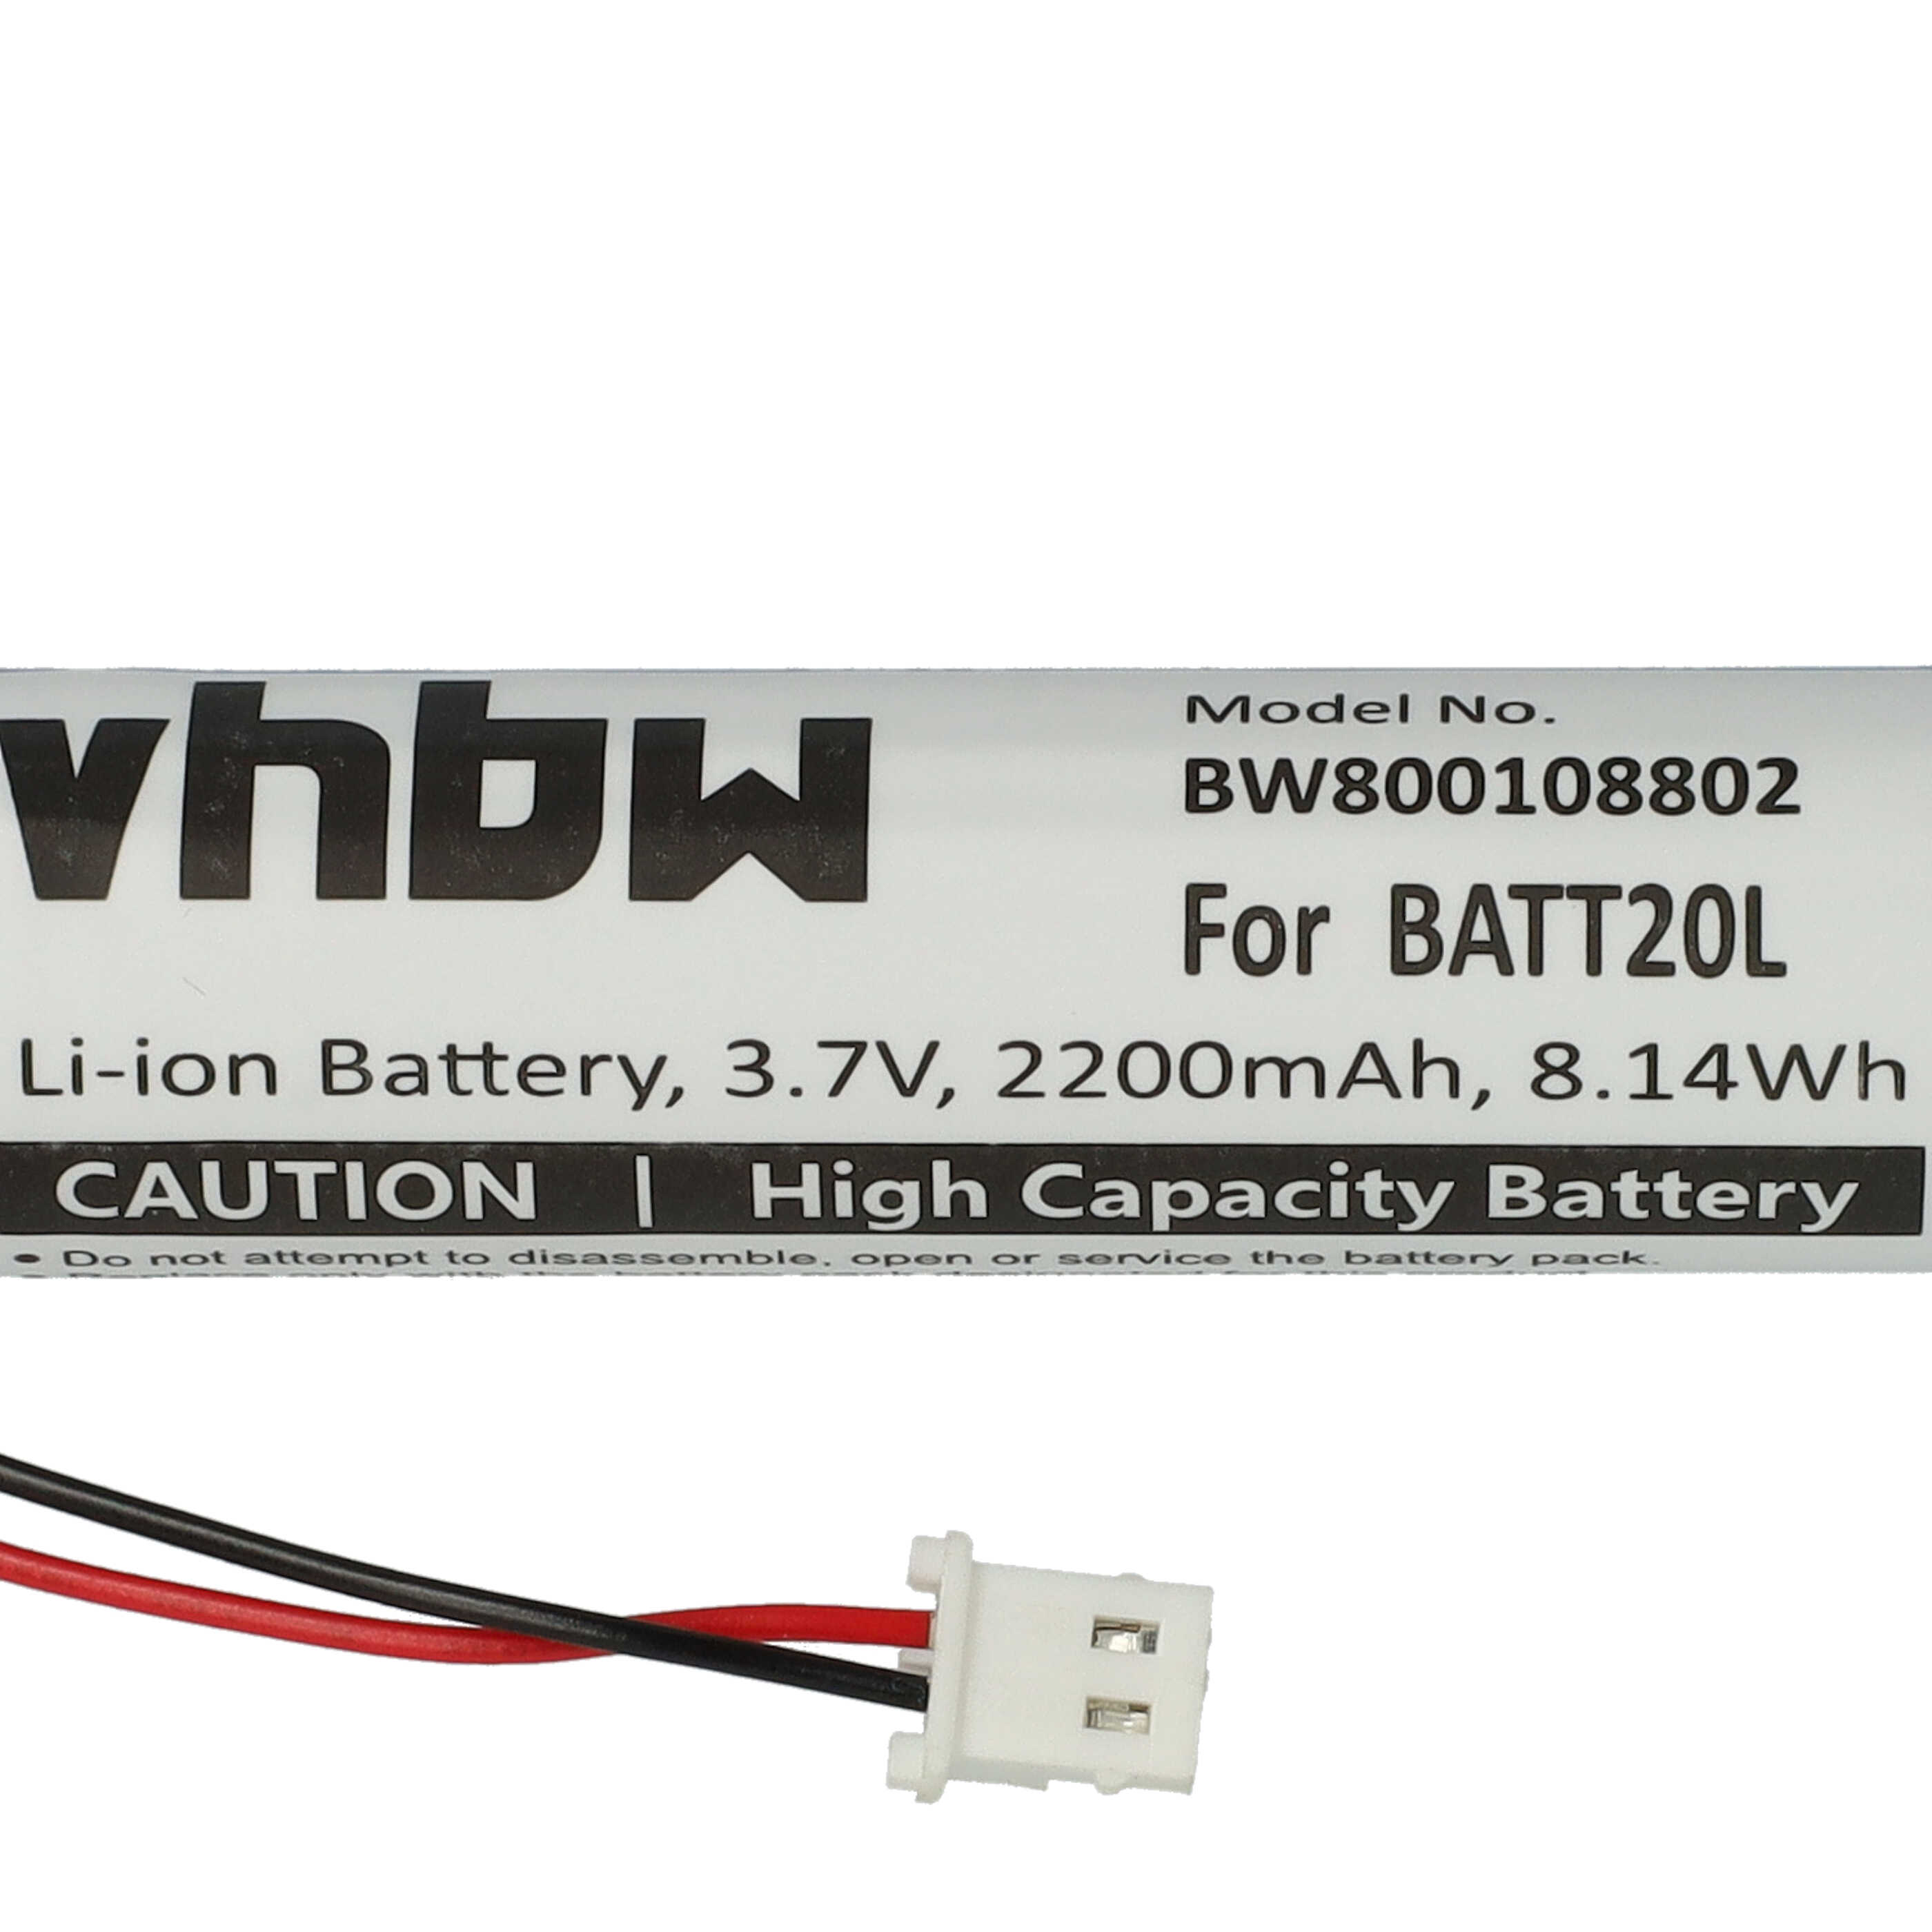 Batterie remplace BATT20L pour radio - 2200mAh 3,7V Li-ion